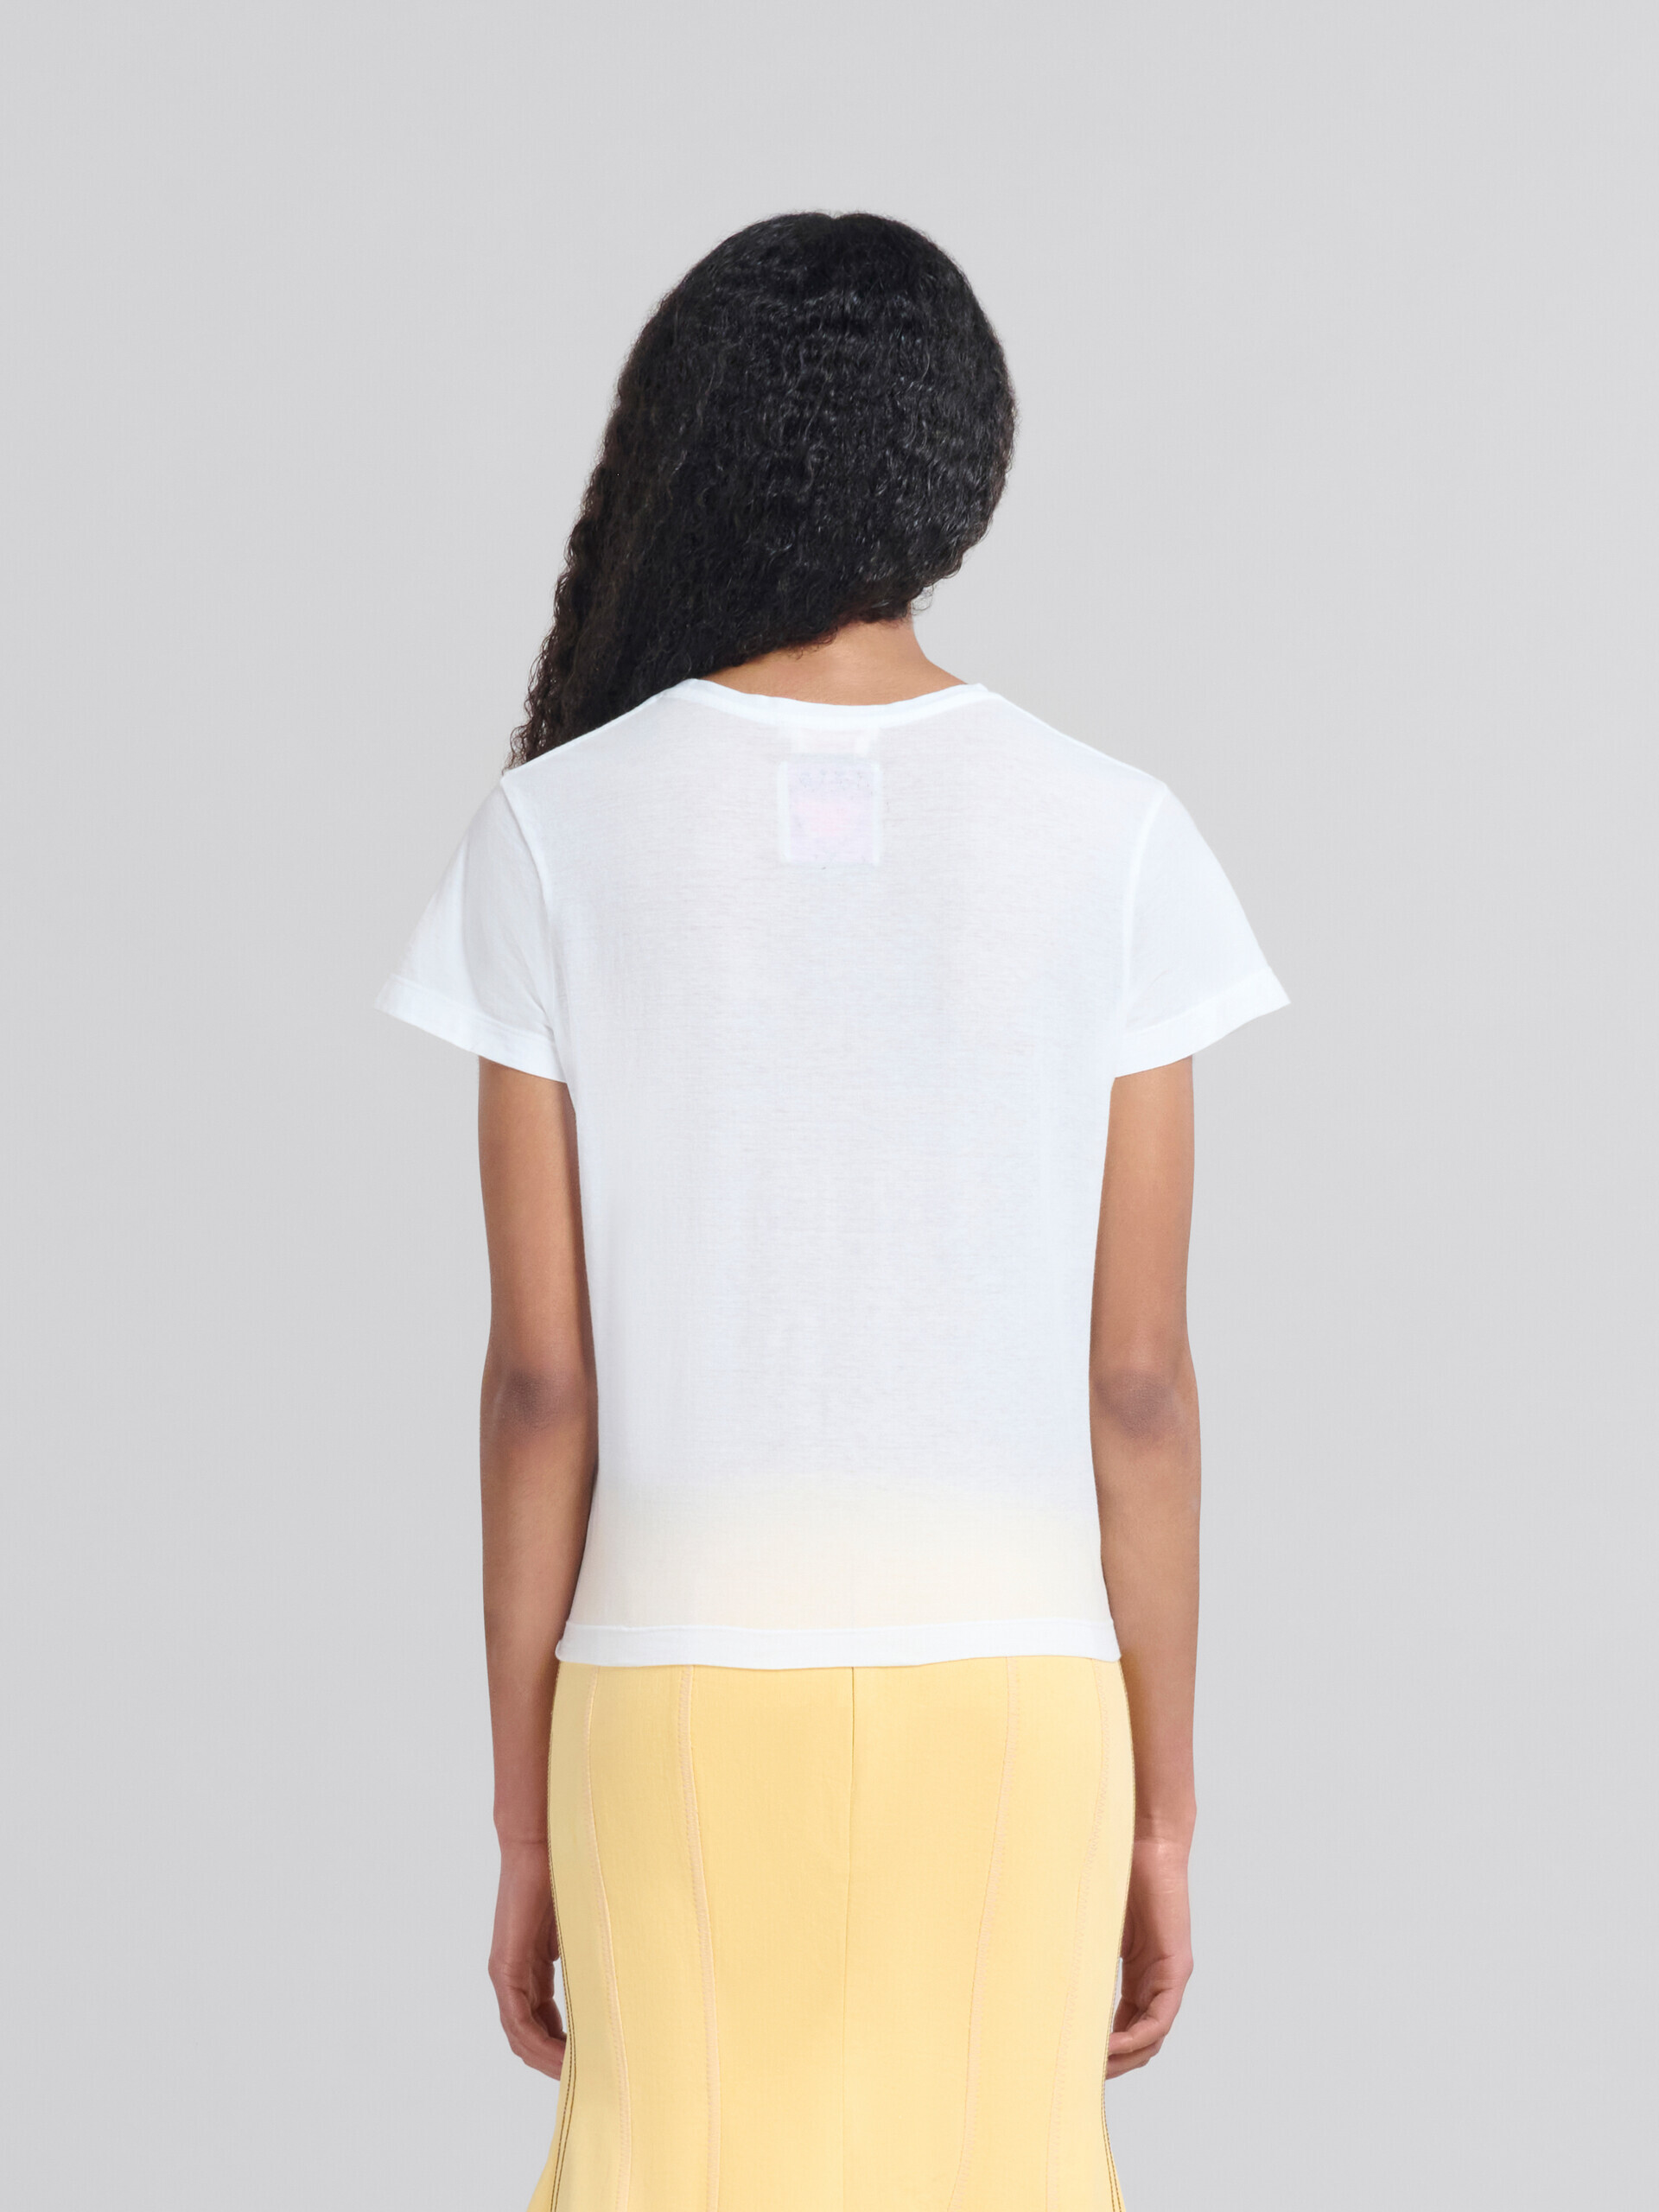 T-shirt slim fit en coton organique blanc avec motif - T-shirts - Image 3